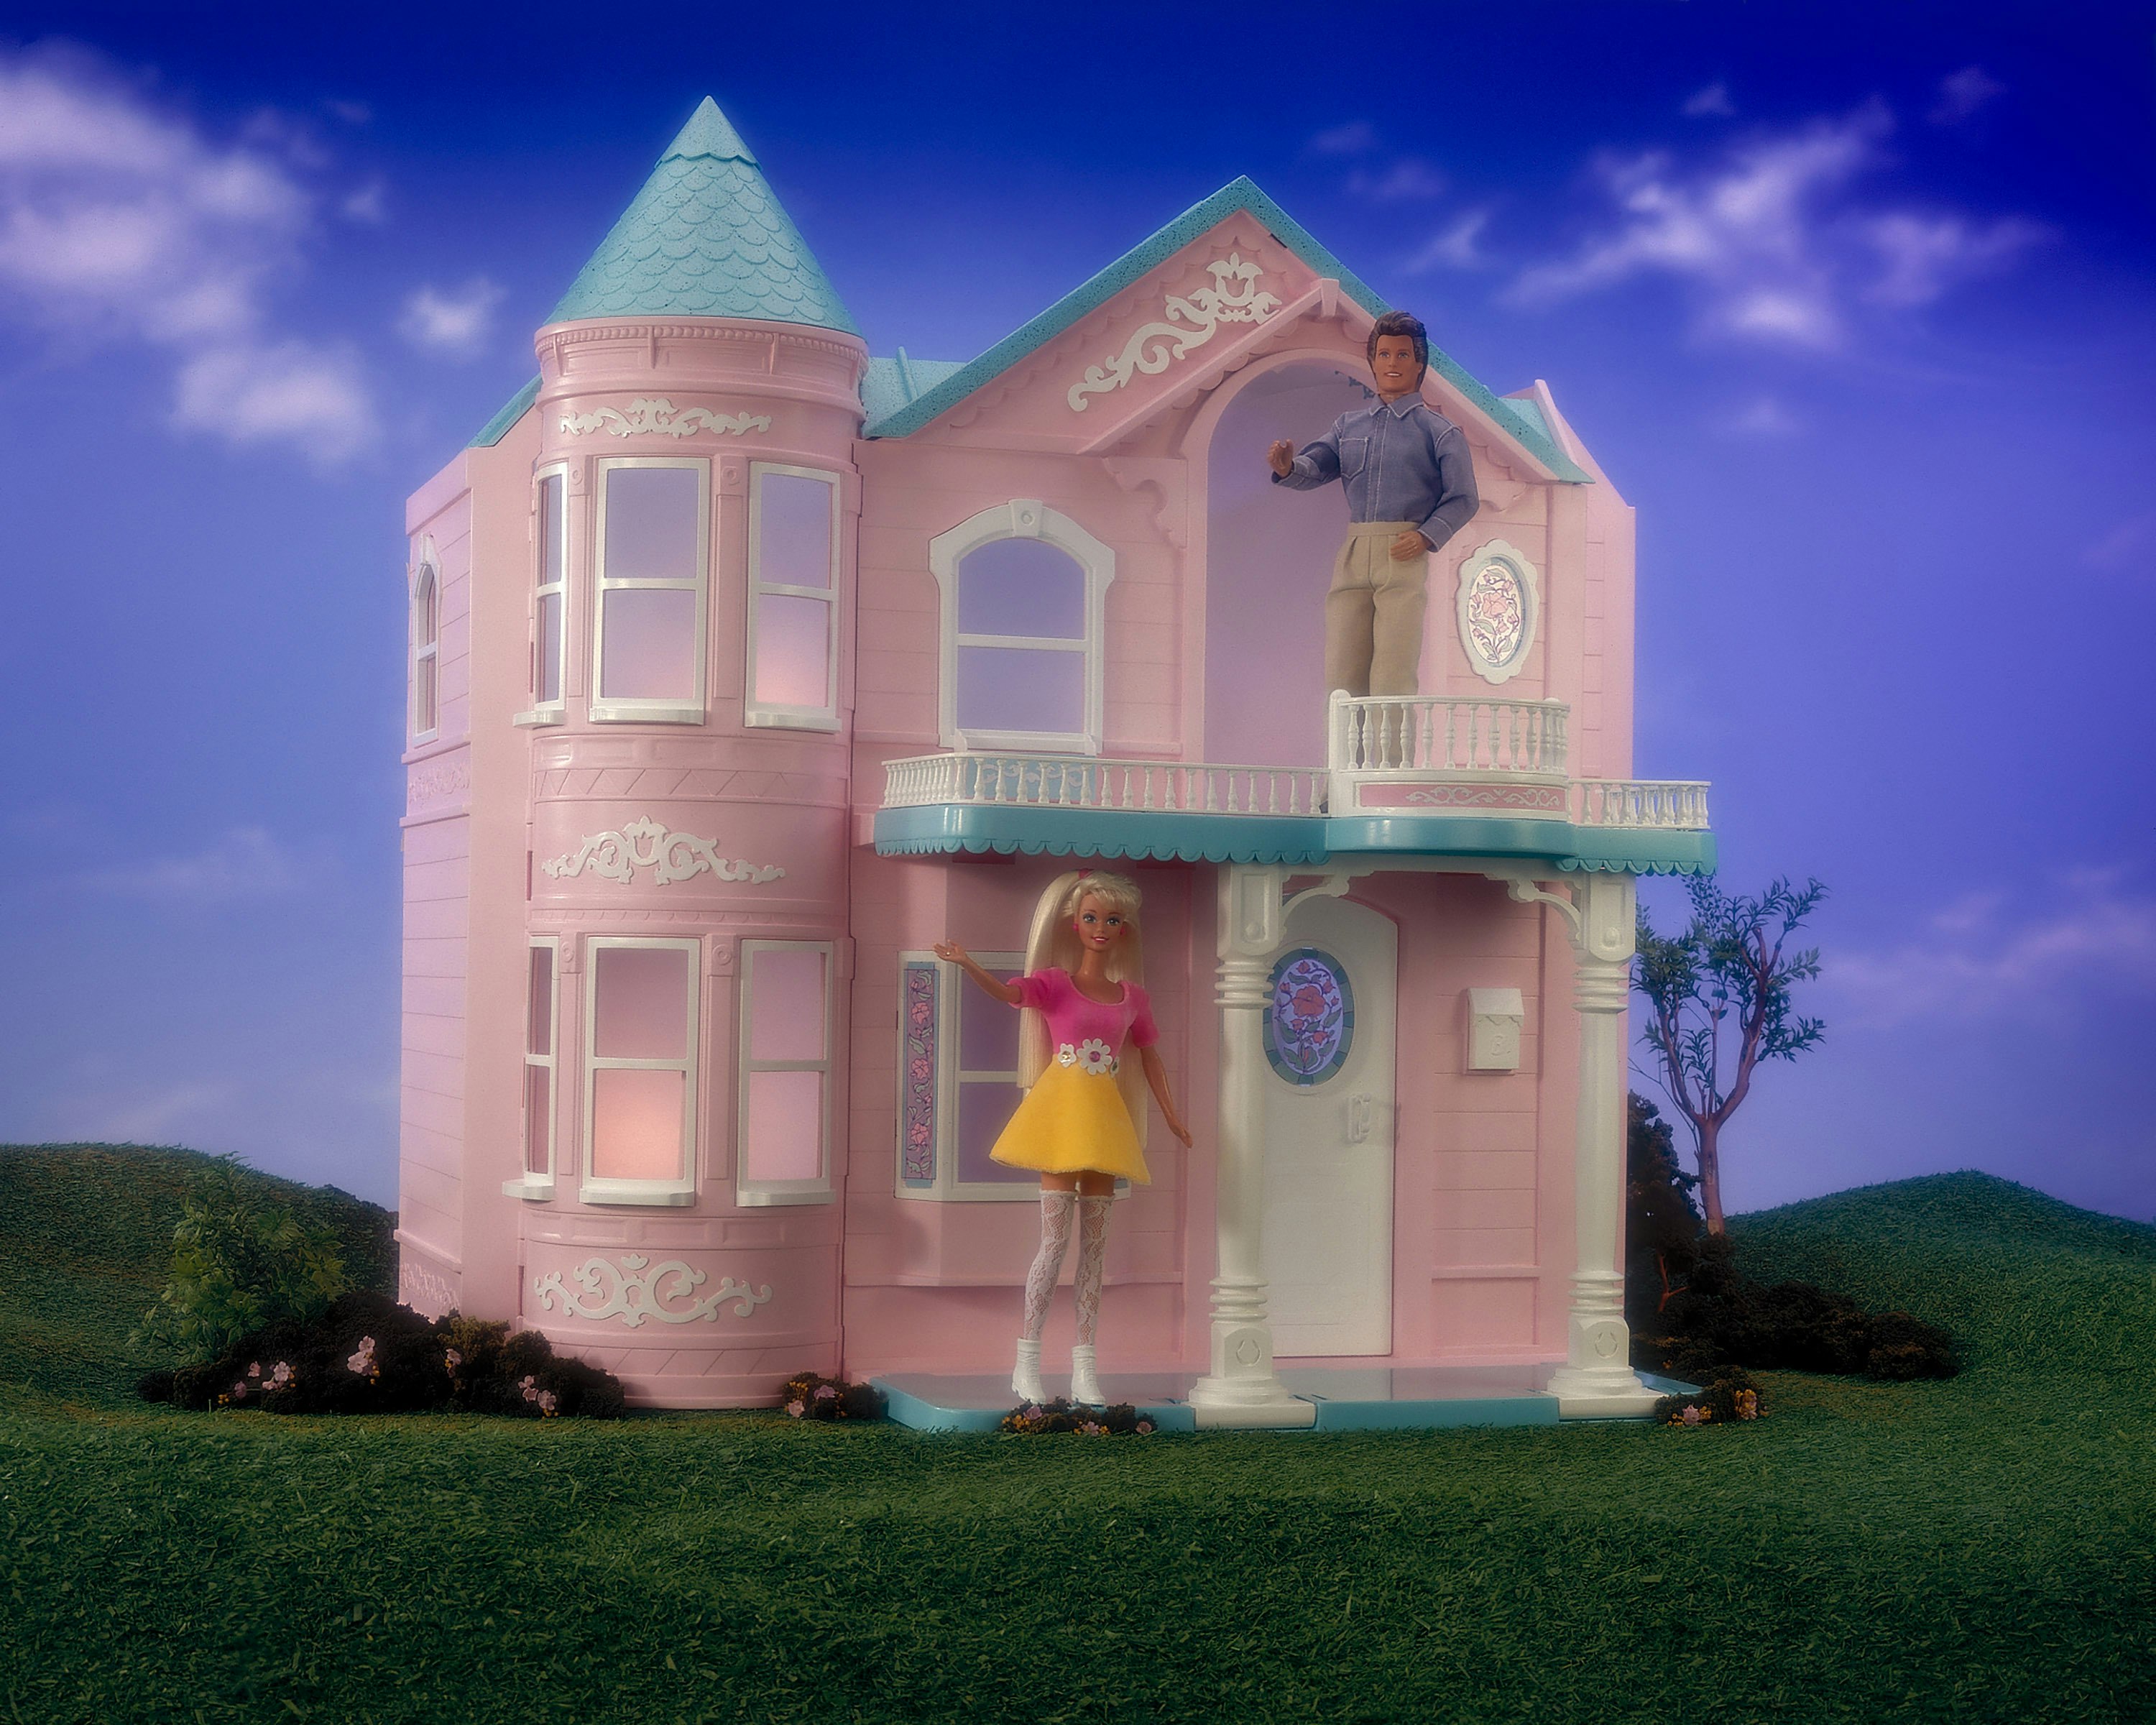 Versão antiga de Barbie Dreamhouse Adventures